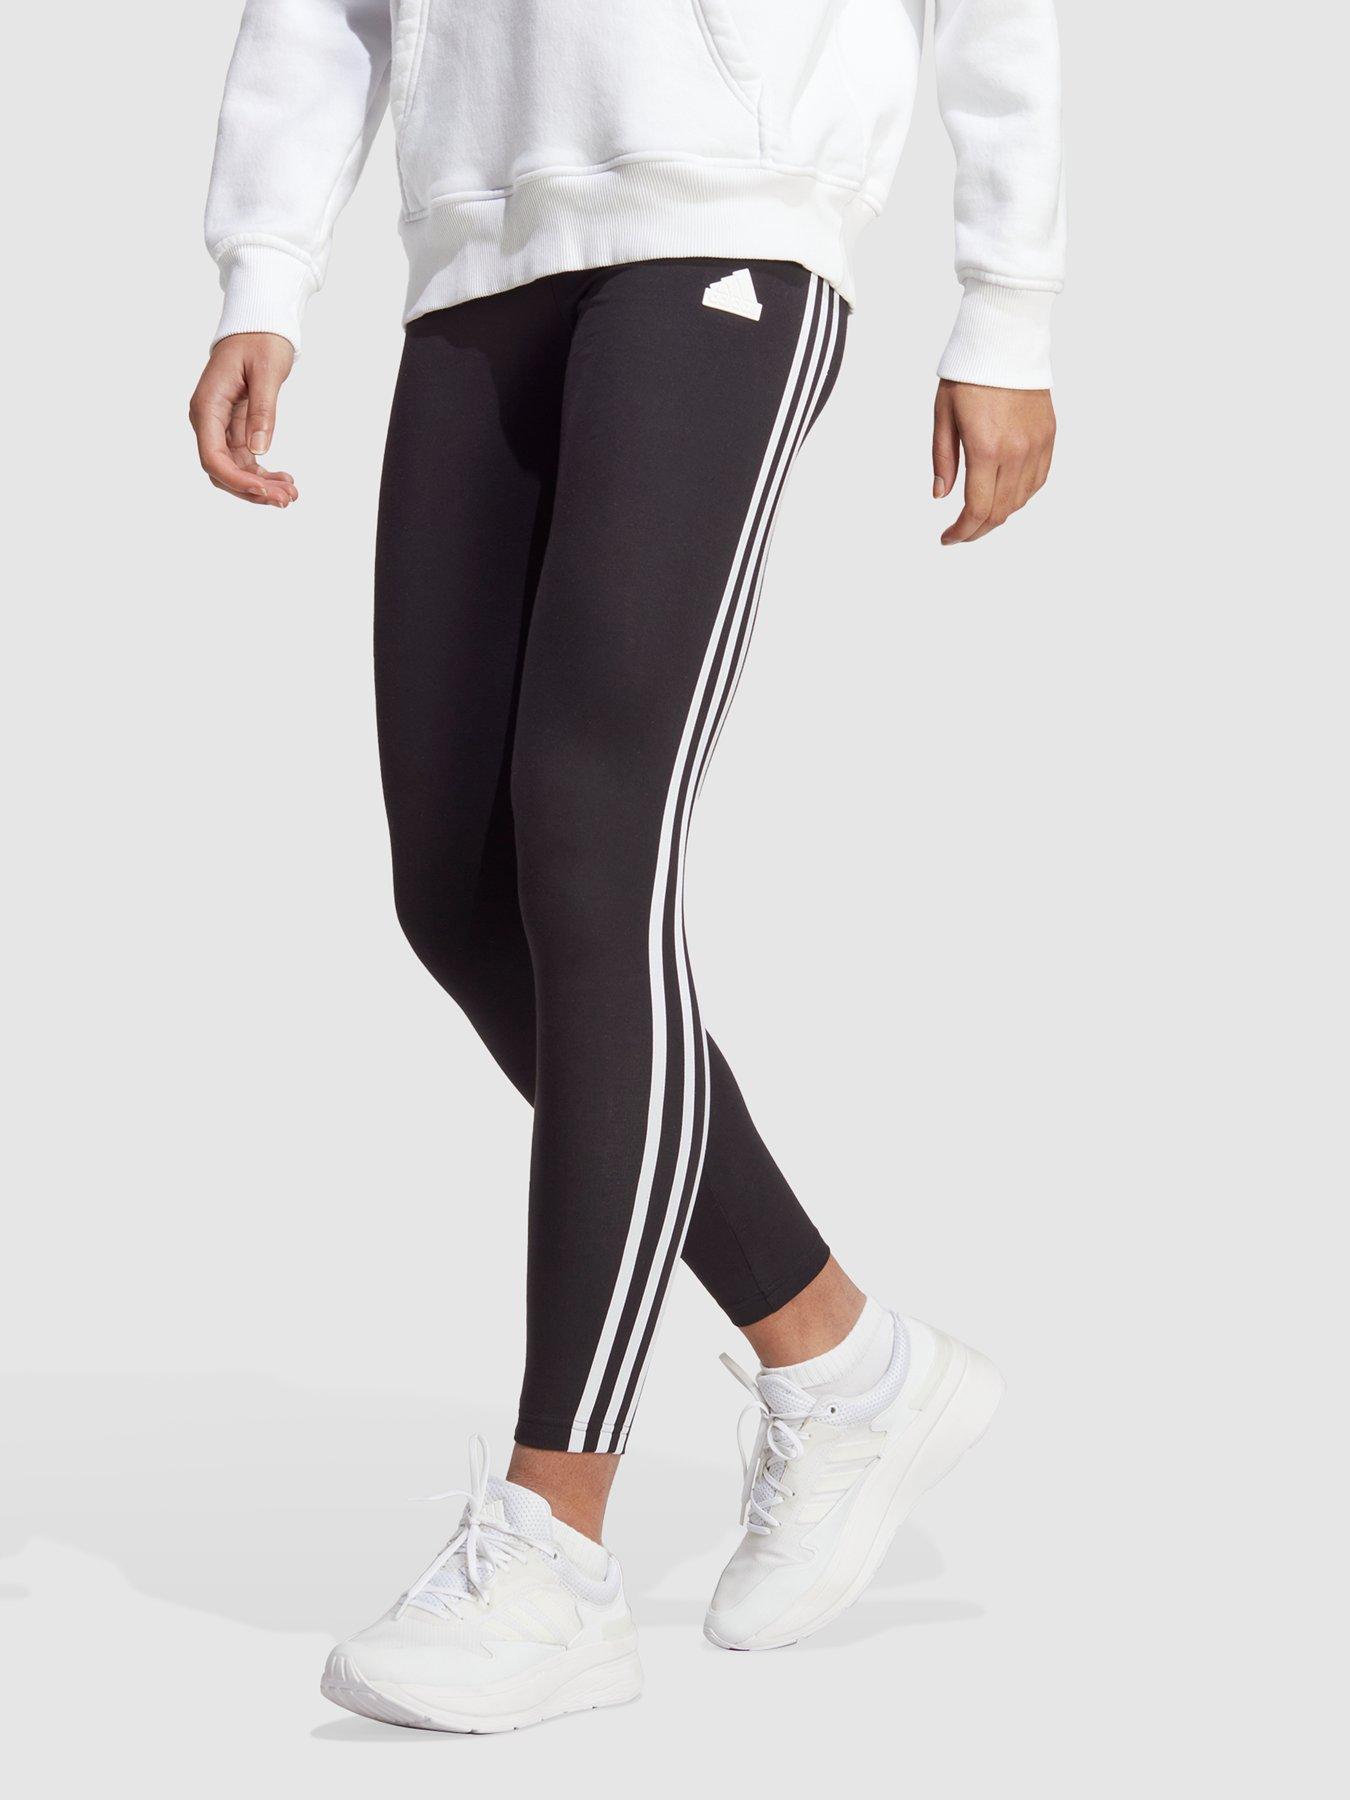 Black Pink Stripes Comfy Name Sportswear Workout Leggings